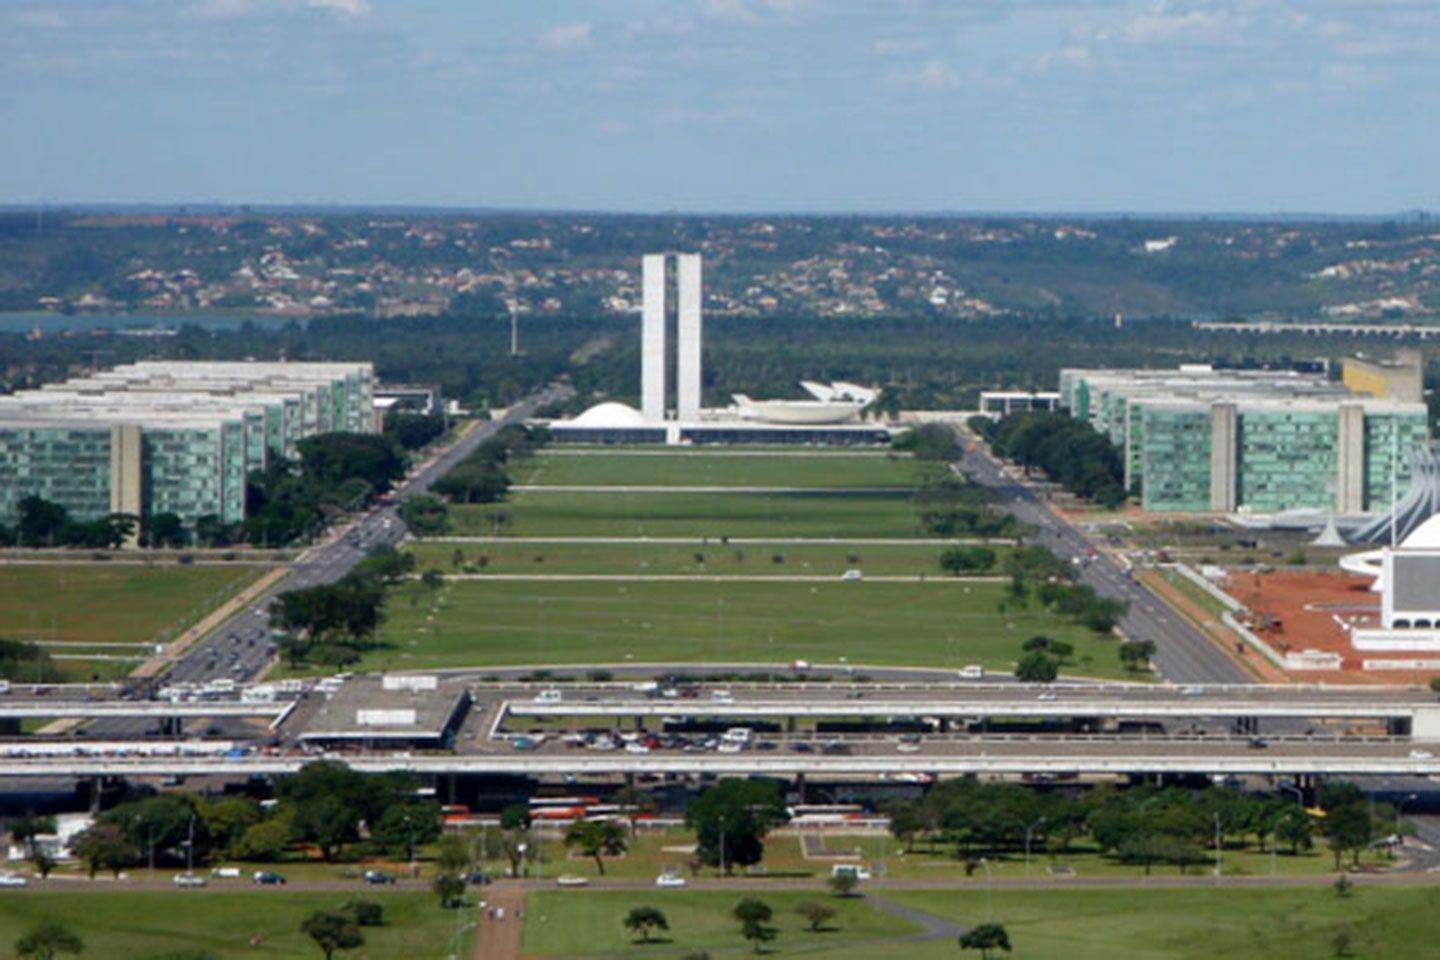 brasilia monumental axis